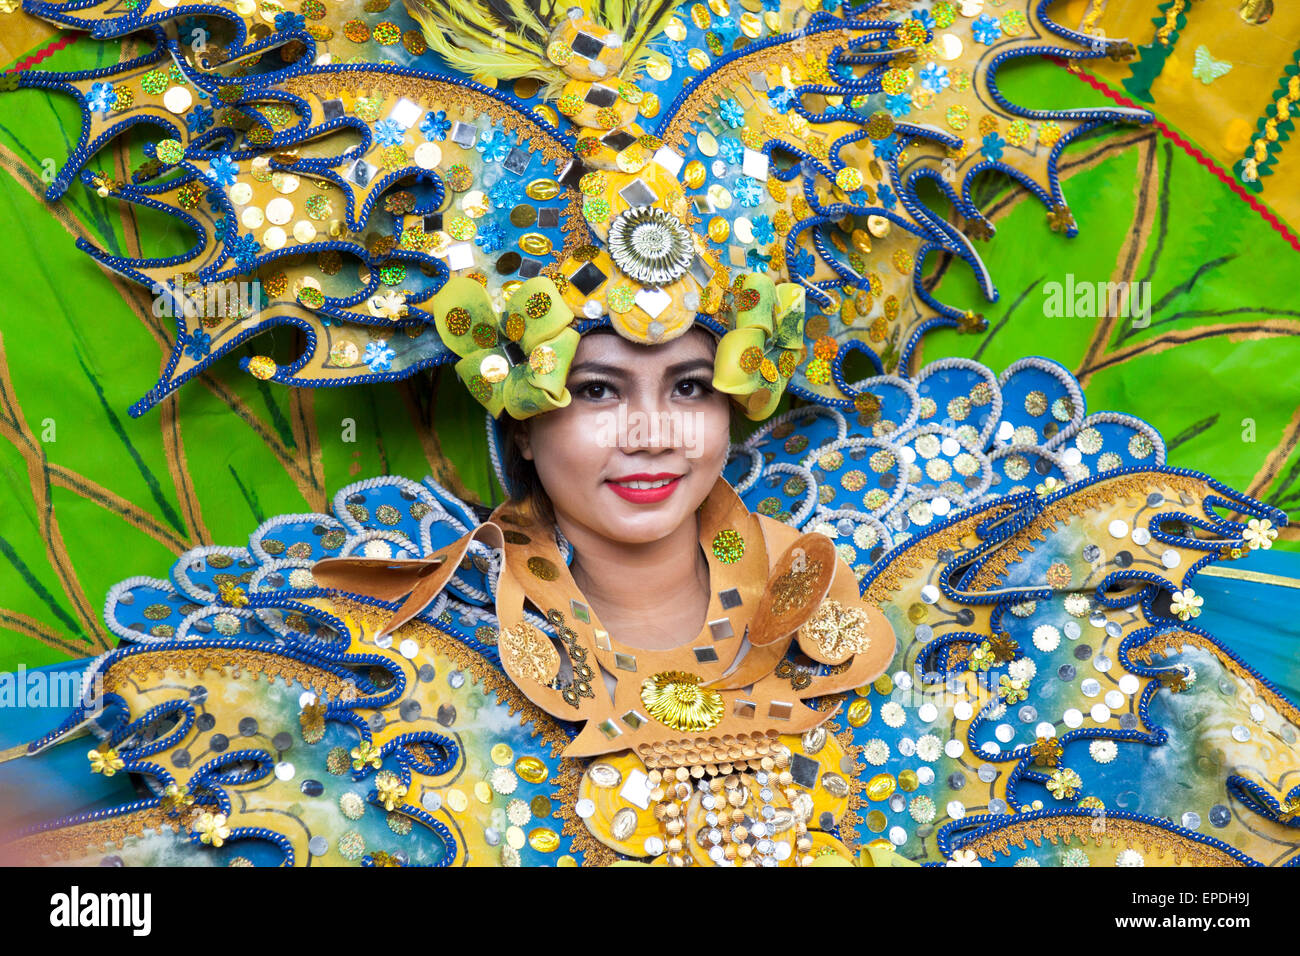 Indonesische Tänzerin im Kostüm - 16. Mai 2015 FestivalAsia, London (Lila Bhawa) Stockfoto